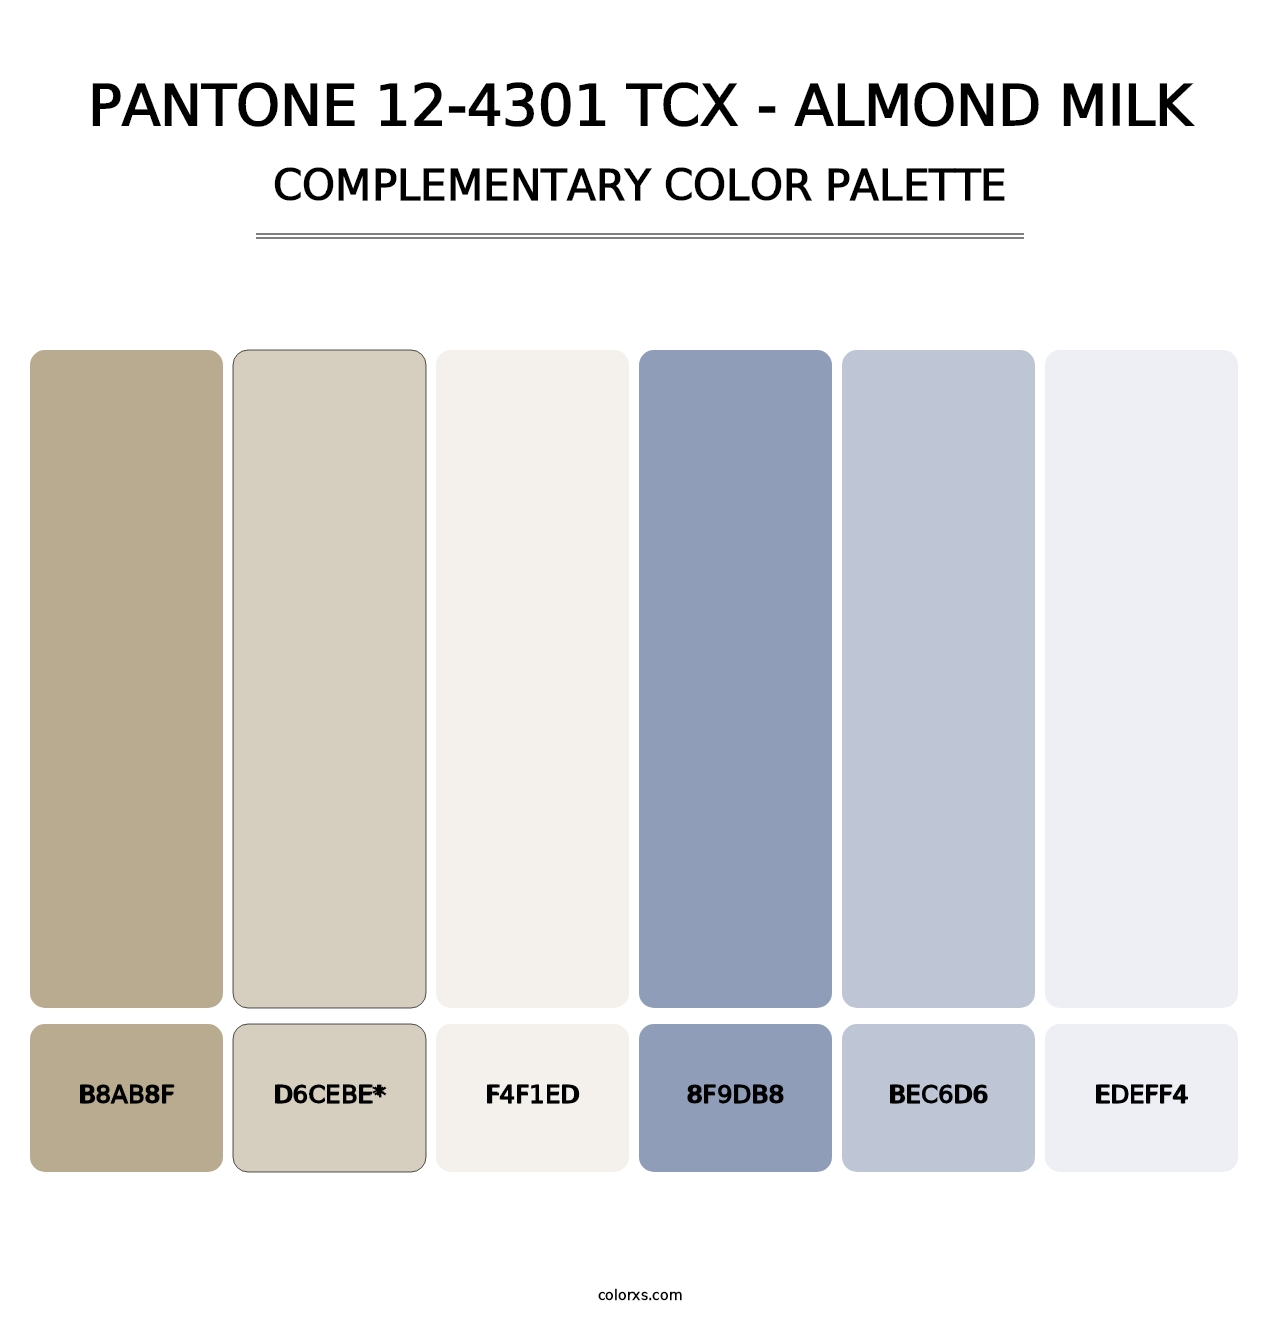 PANTONE 12-4301 TCX - Almond Milk - Complementary Color Palette